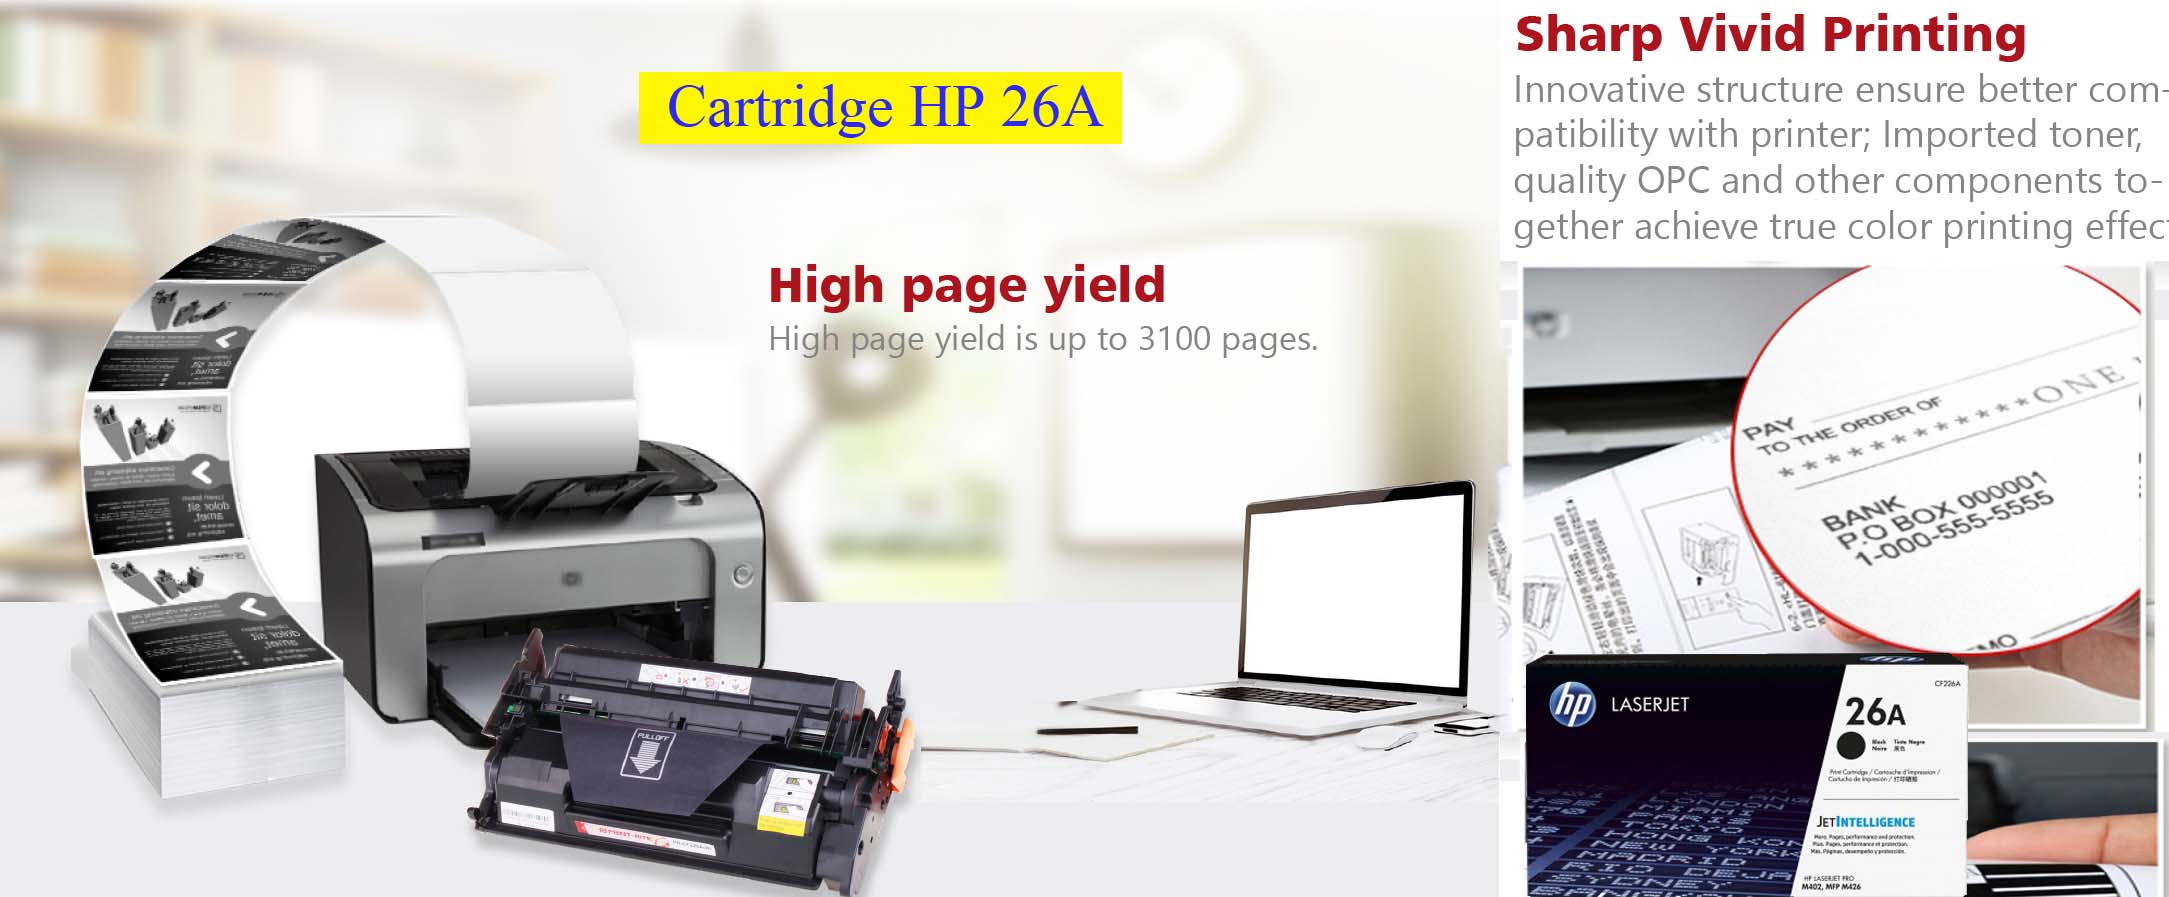 کارتریج پرینتر hp 26a for hp laserjet pro m402n printers